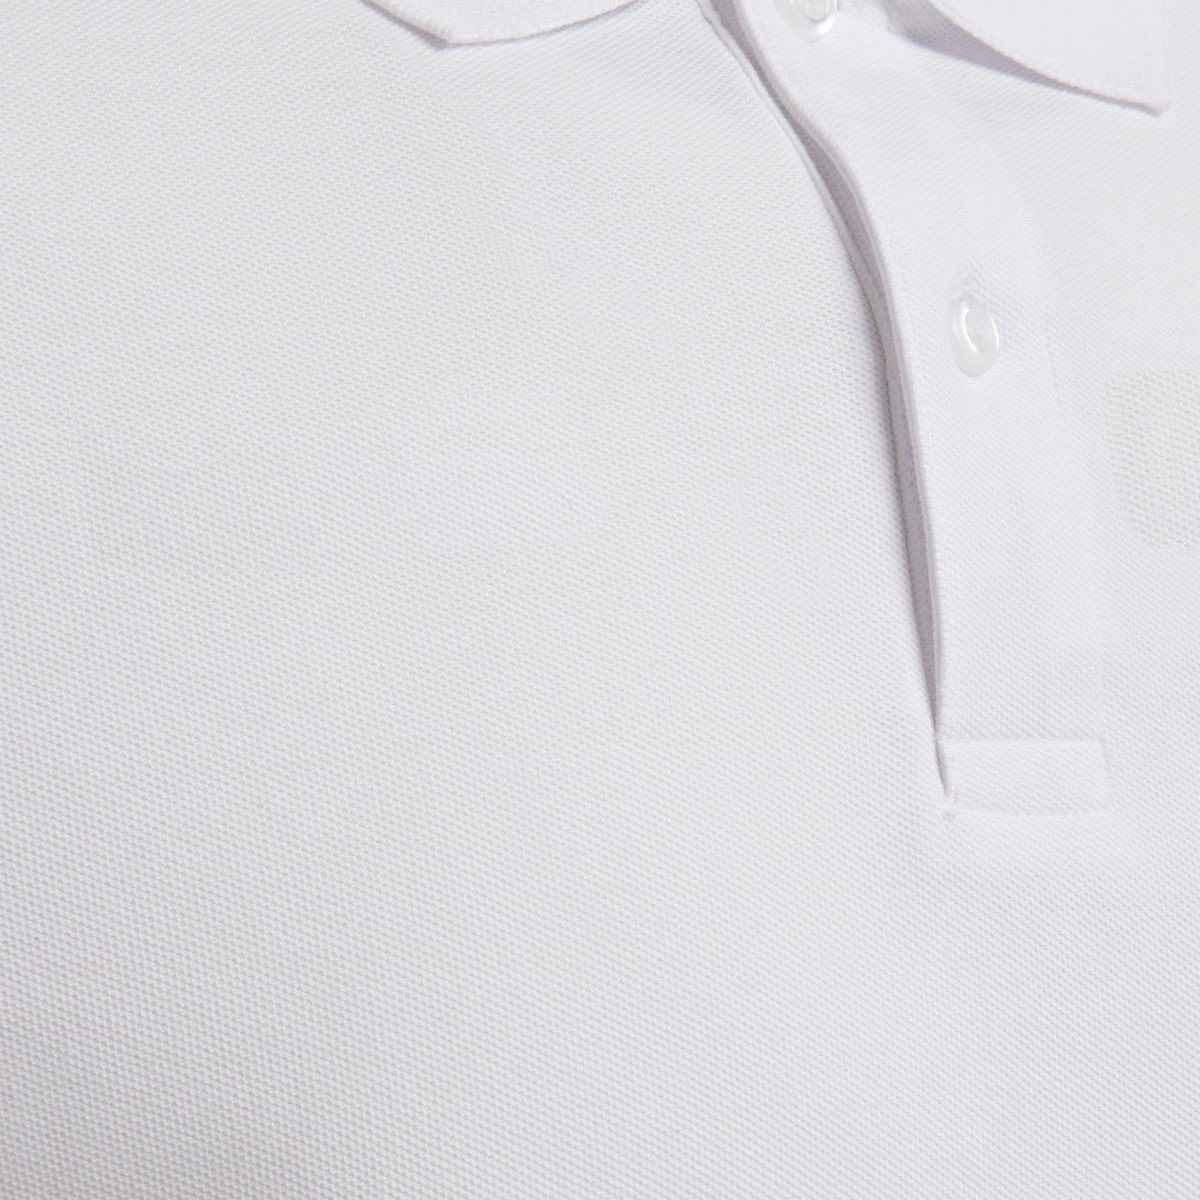 9001 - HMLGOMover White Herren Poloshirts hummel POLO T-Shirt COTTON